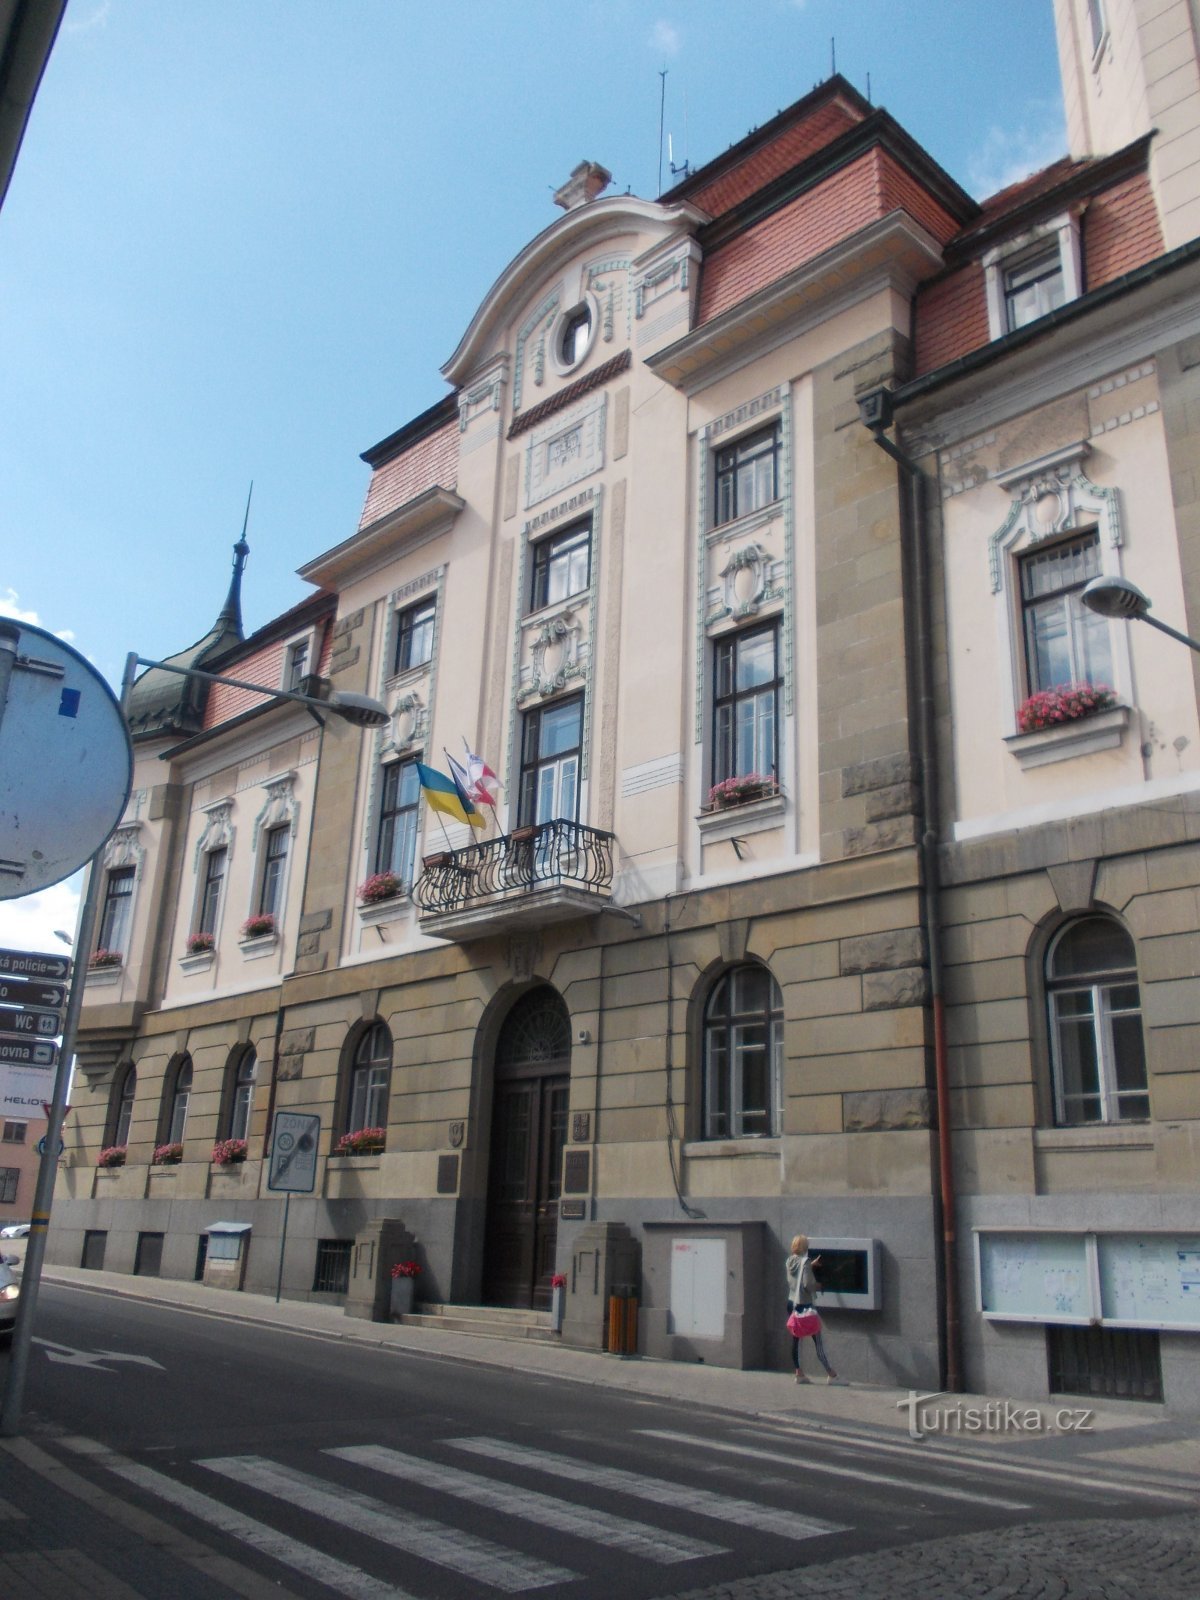 το μπροστινό μέρος του κτιρίου του δημαρχείου από την οδό Břežanská